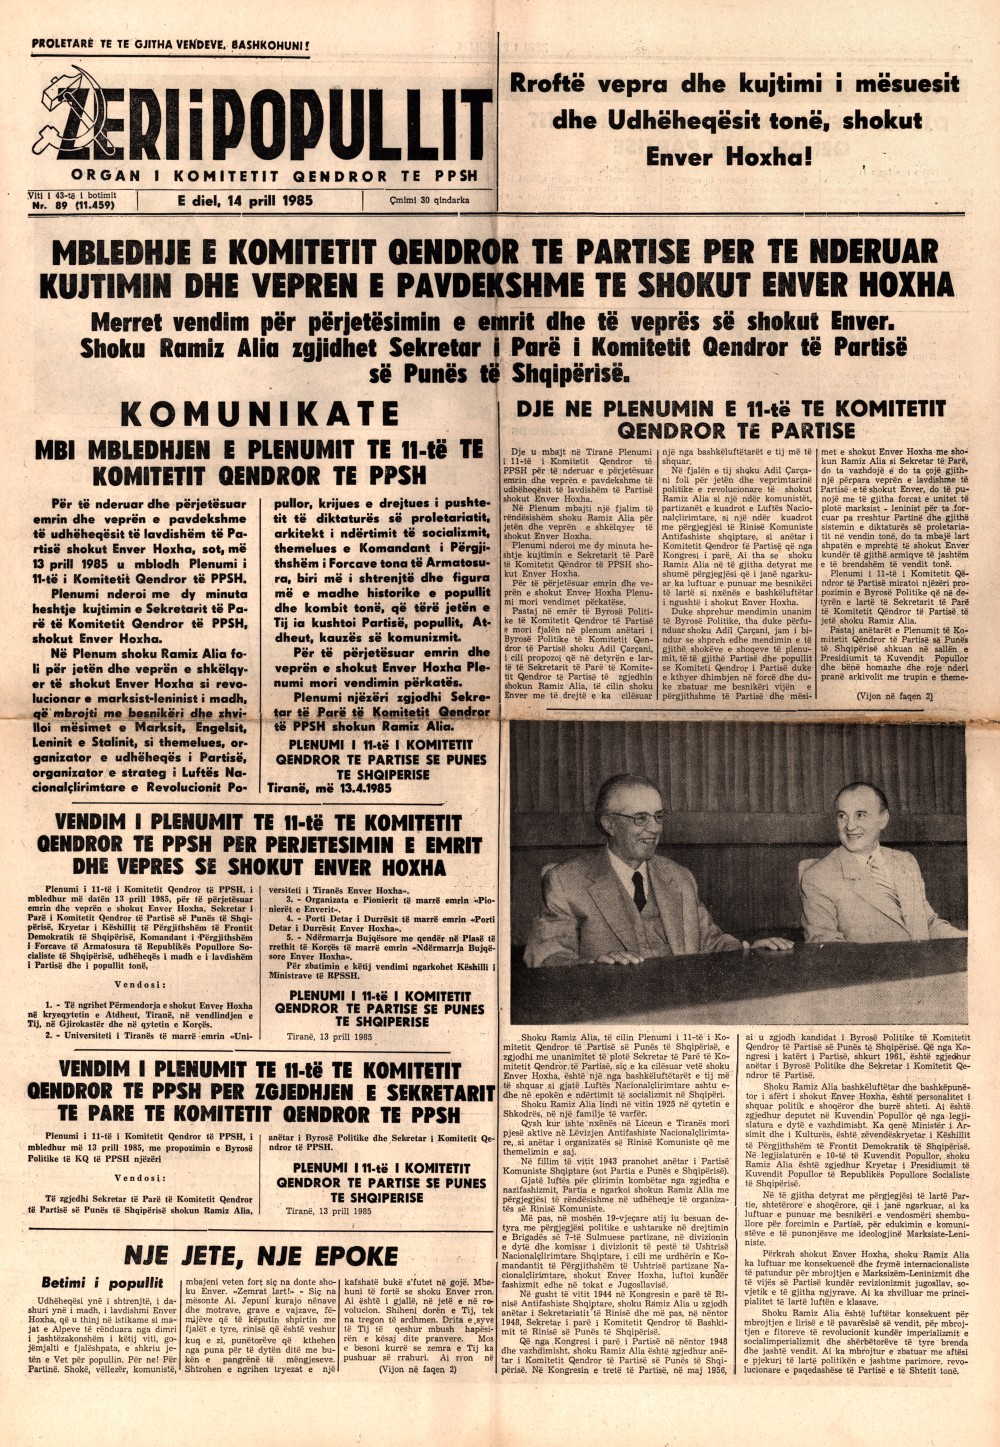 Газета "Зери и популлит" от 14 апреля 1985 года (первая полоса)